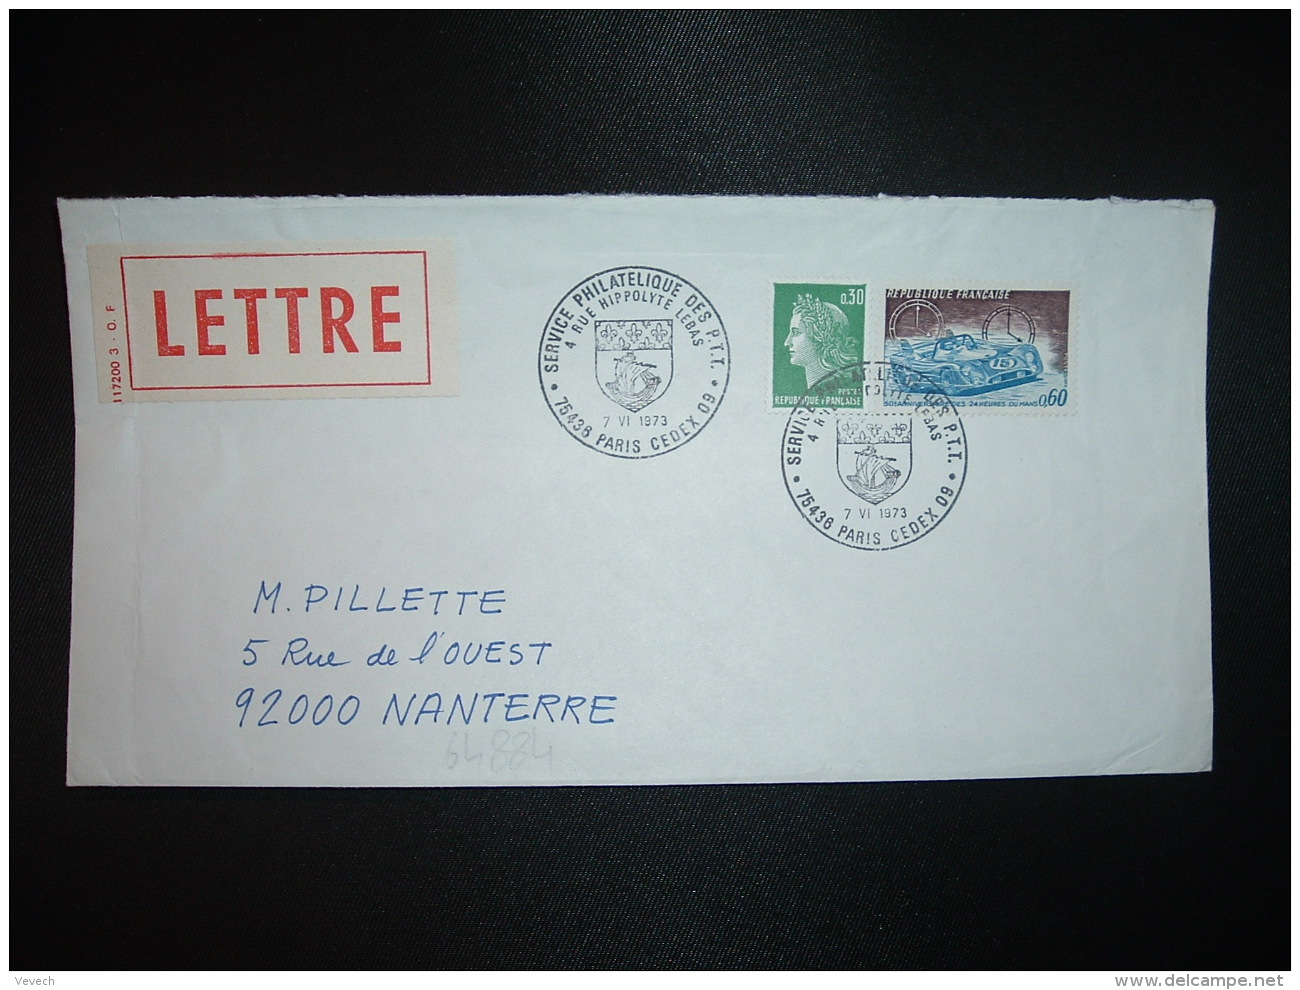 LETTRE TP 24 HEURES DU MANS 0,60 + M. DE CHEFFER 0,30 OBL.7 VI 1973 PARIS CEDEX 09 SERVICE PHILATELIQUE DES PTT - Tarifs Postaux